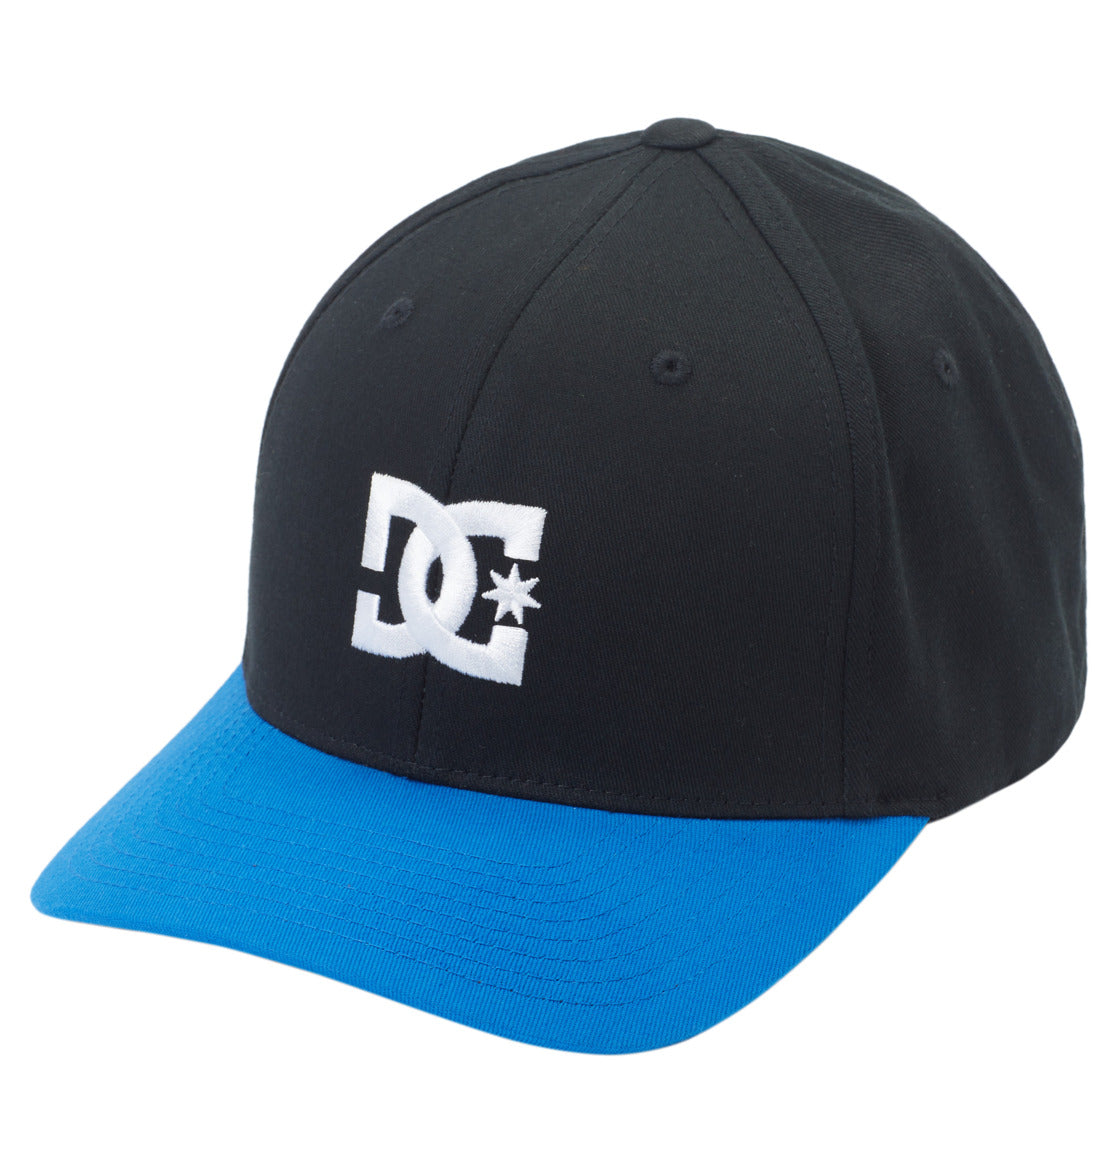 DC SHOES CAP STAR NAUTICAL BLUE & BLACK FLEXFIT CAP